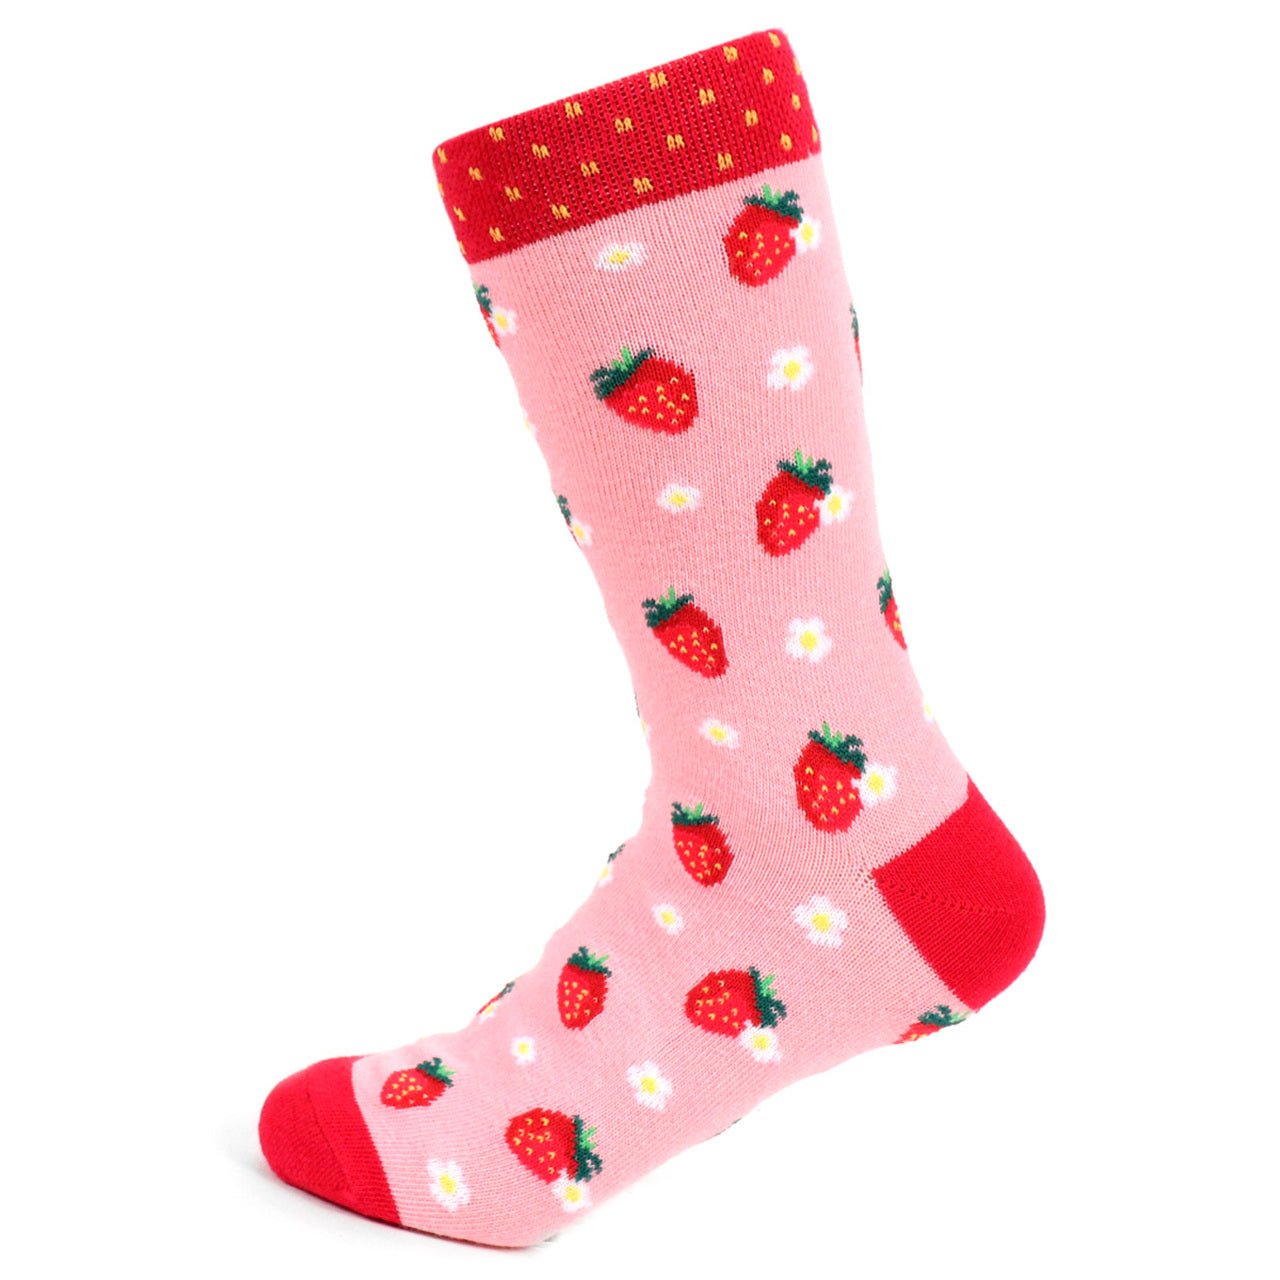 Women's Strawberry Fields and Flowers Crew Socks